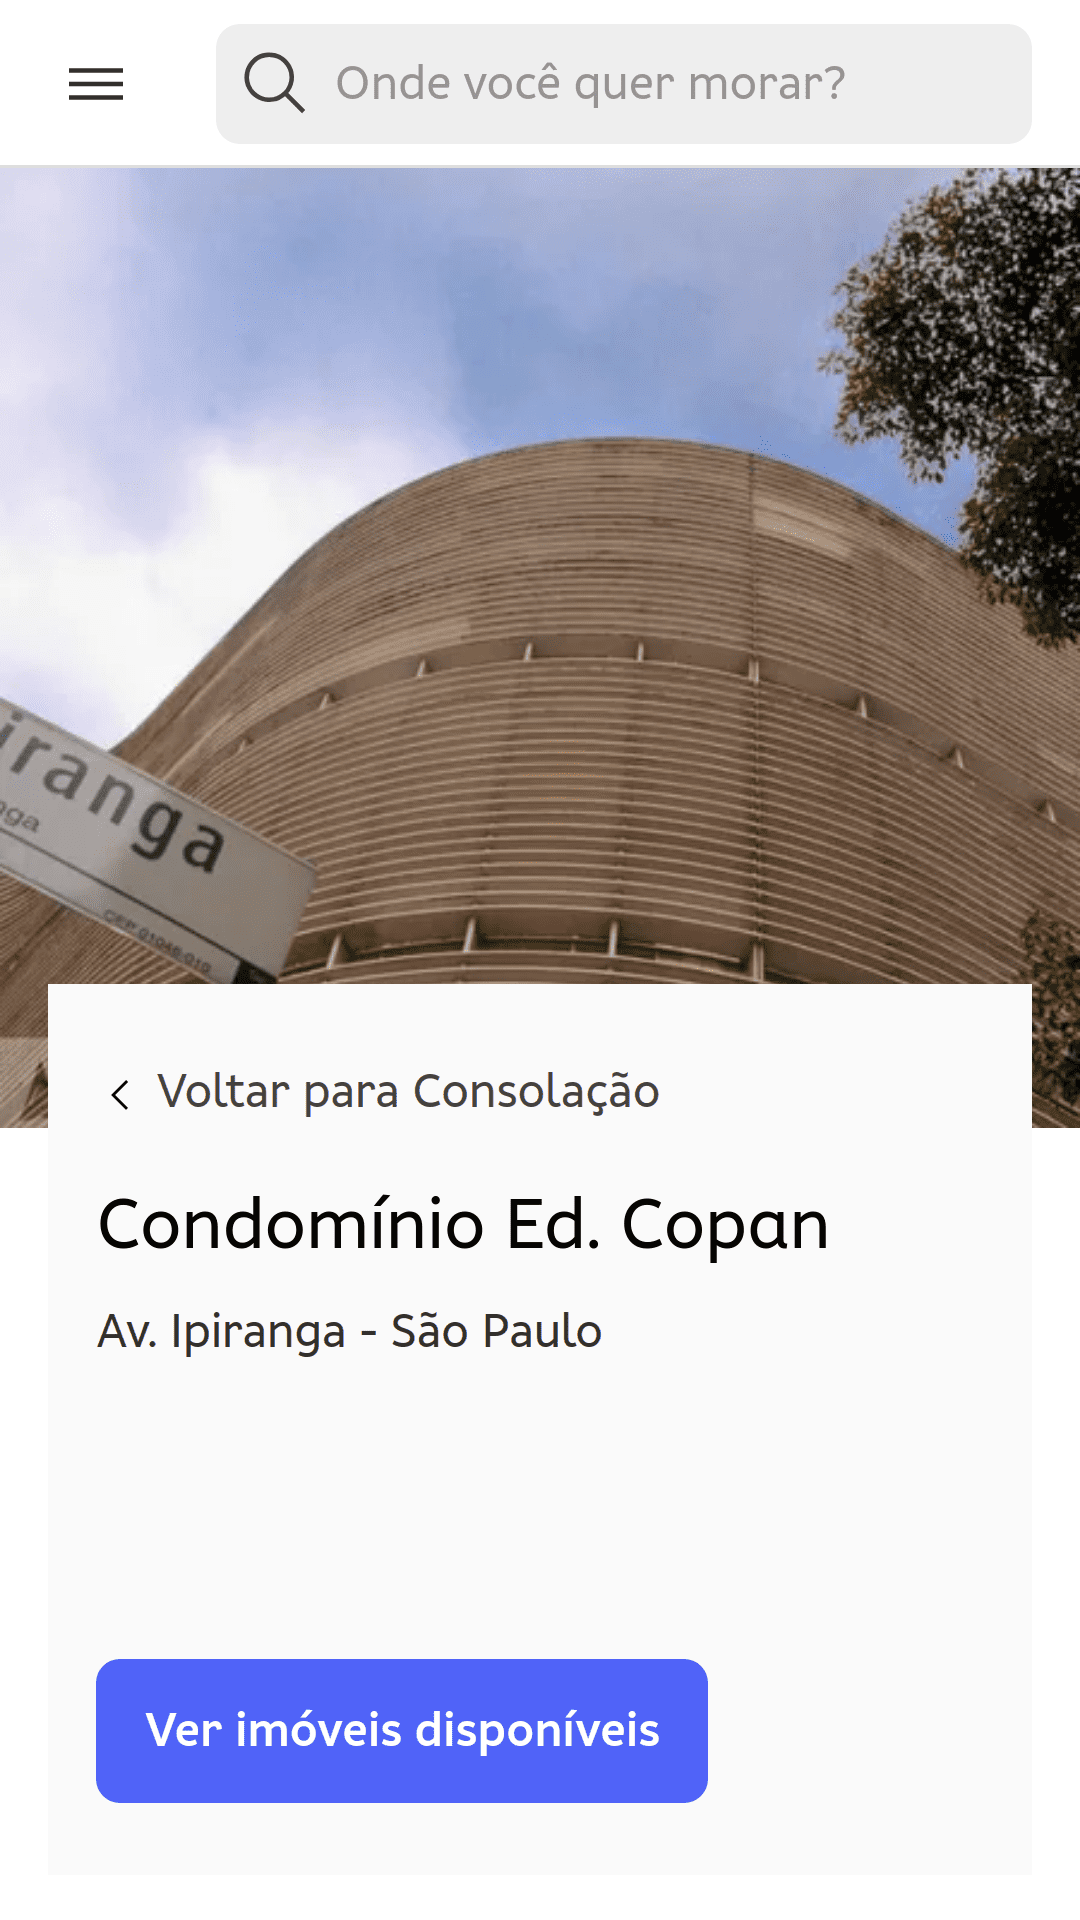 Strona dotycząca mieszkania u Edifício Copan (São Paulo, Brazylia). Na zdjęciu z poziomu gruntu widać krzywe konstrukcji budynku.